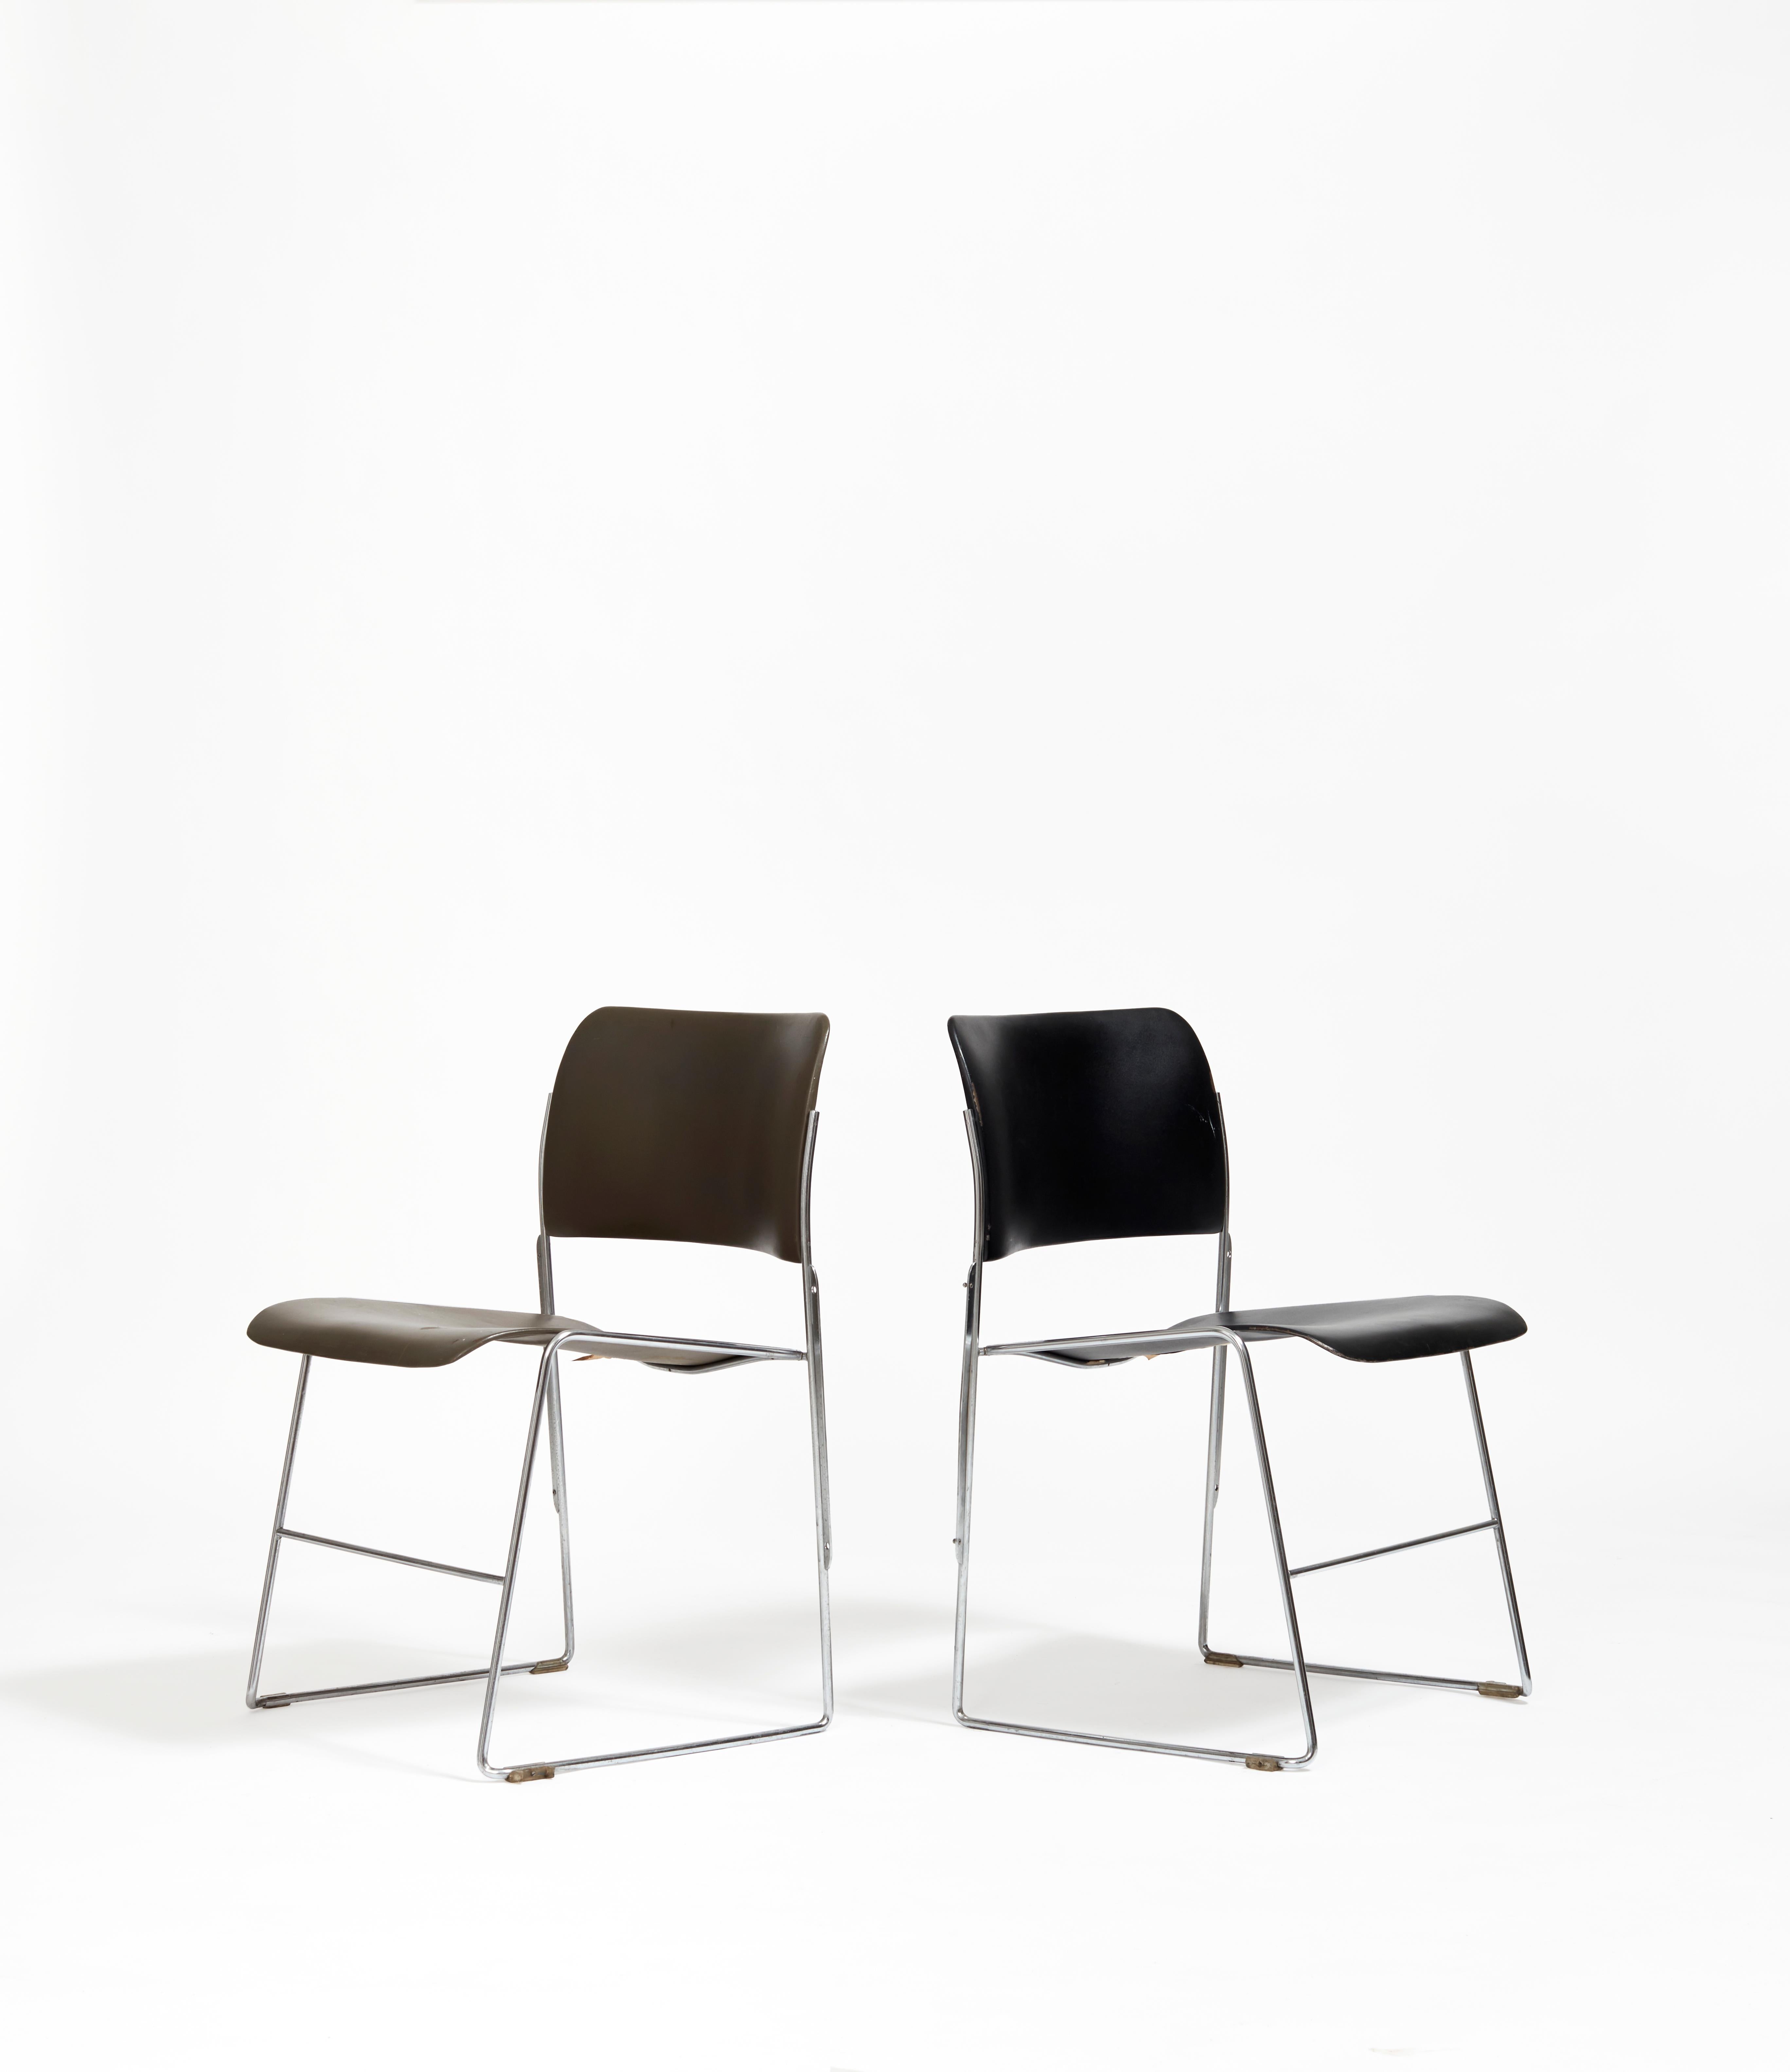 Reconnue comme la première chaise véritablement empilable, la chaise 40/4 est une prouesse d'élégance et d'ergonomie ; elle englobe toute la gamme des multifonctions qui sont venues défier les designers modernistes des 20e et 21e siècles.